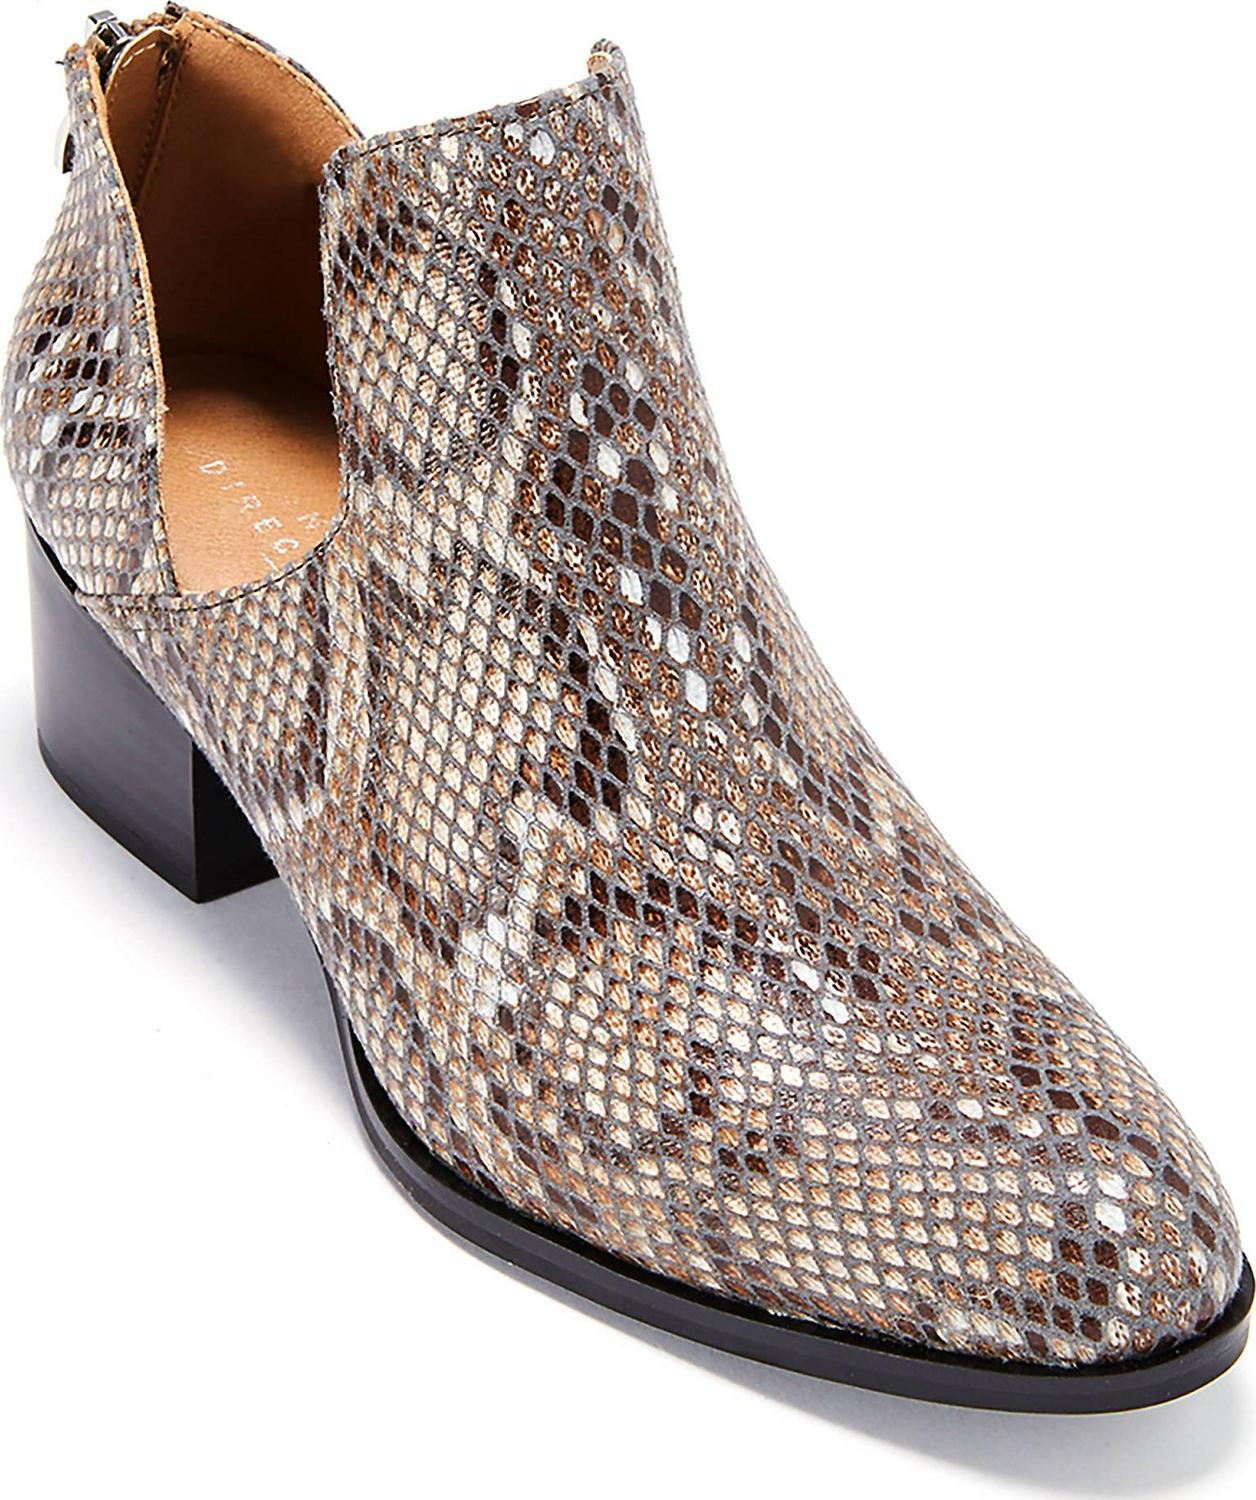 Womens Shoe, Low Heel Snakeskin Style Fredricka Booties (size 7.5)